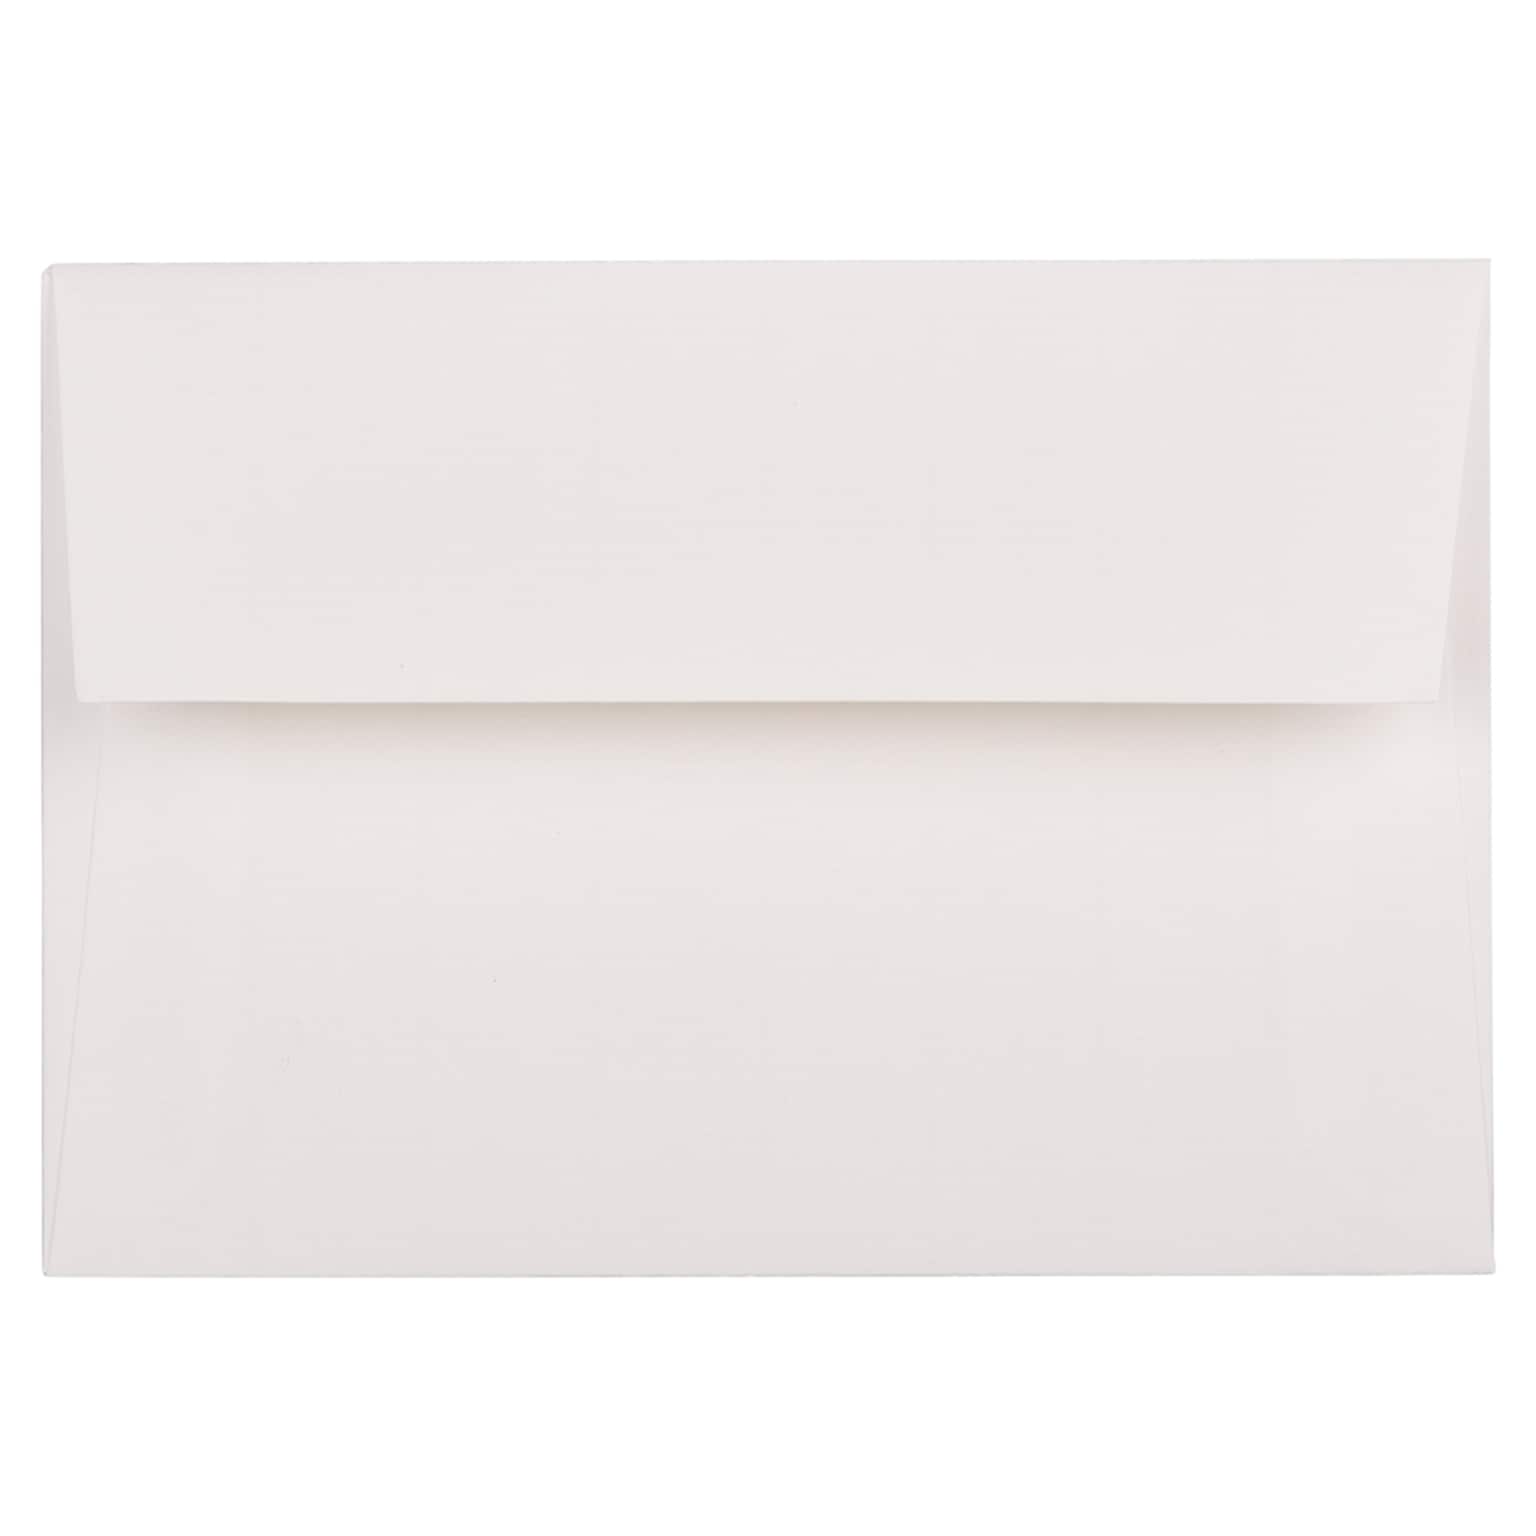 JAM Paper® 4Bar A1 Strathmore Invitation Envelopes, 3.625 x 5.125, Bright White Laid, 50/Pack (900911330I)